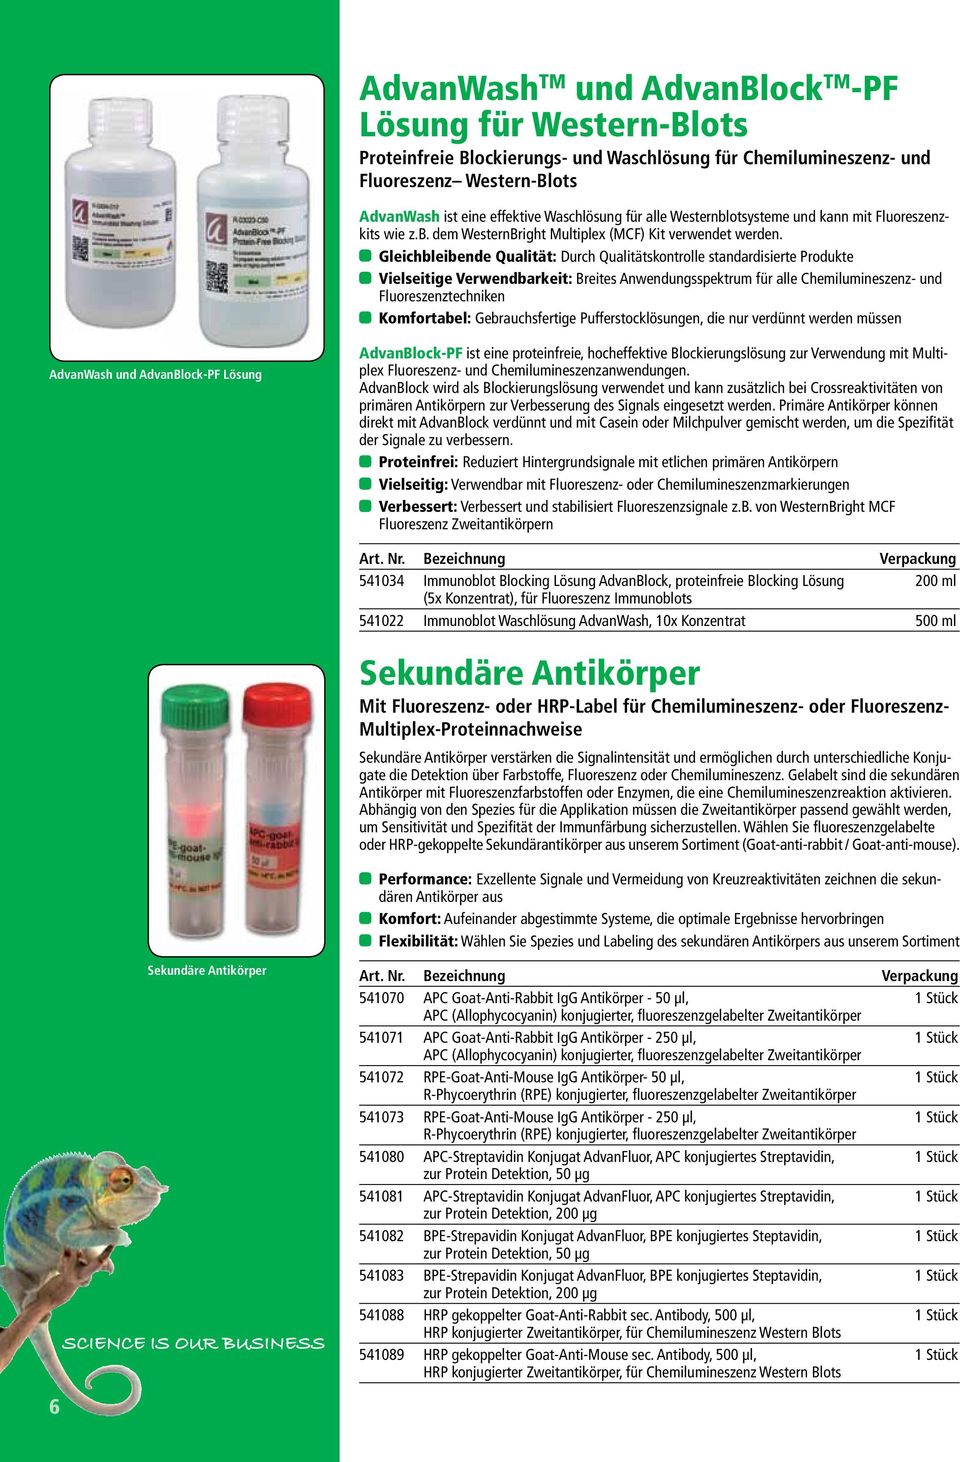 Gleichbleibende Qualität: Durch Qualitätskontrolle standardisierte Produkte Vielseitige Verwendbarkeit: Breites Anwendungsspektrum für alle Chemilumineszenz- und Fluoreszenztechniken Komfortabel: